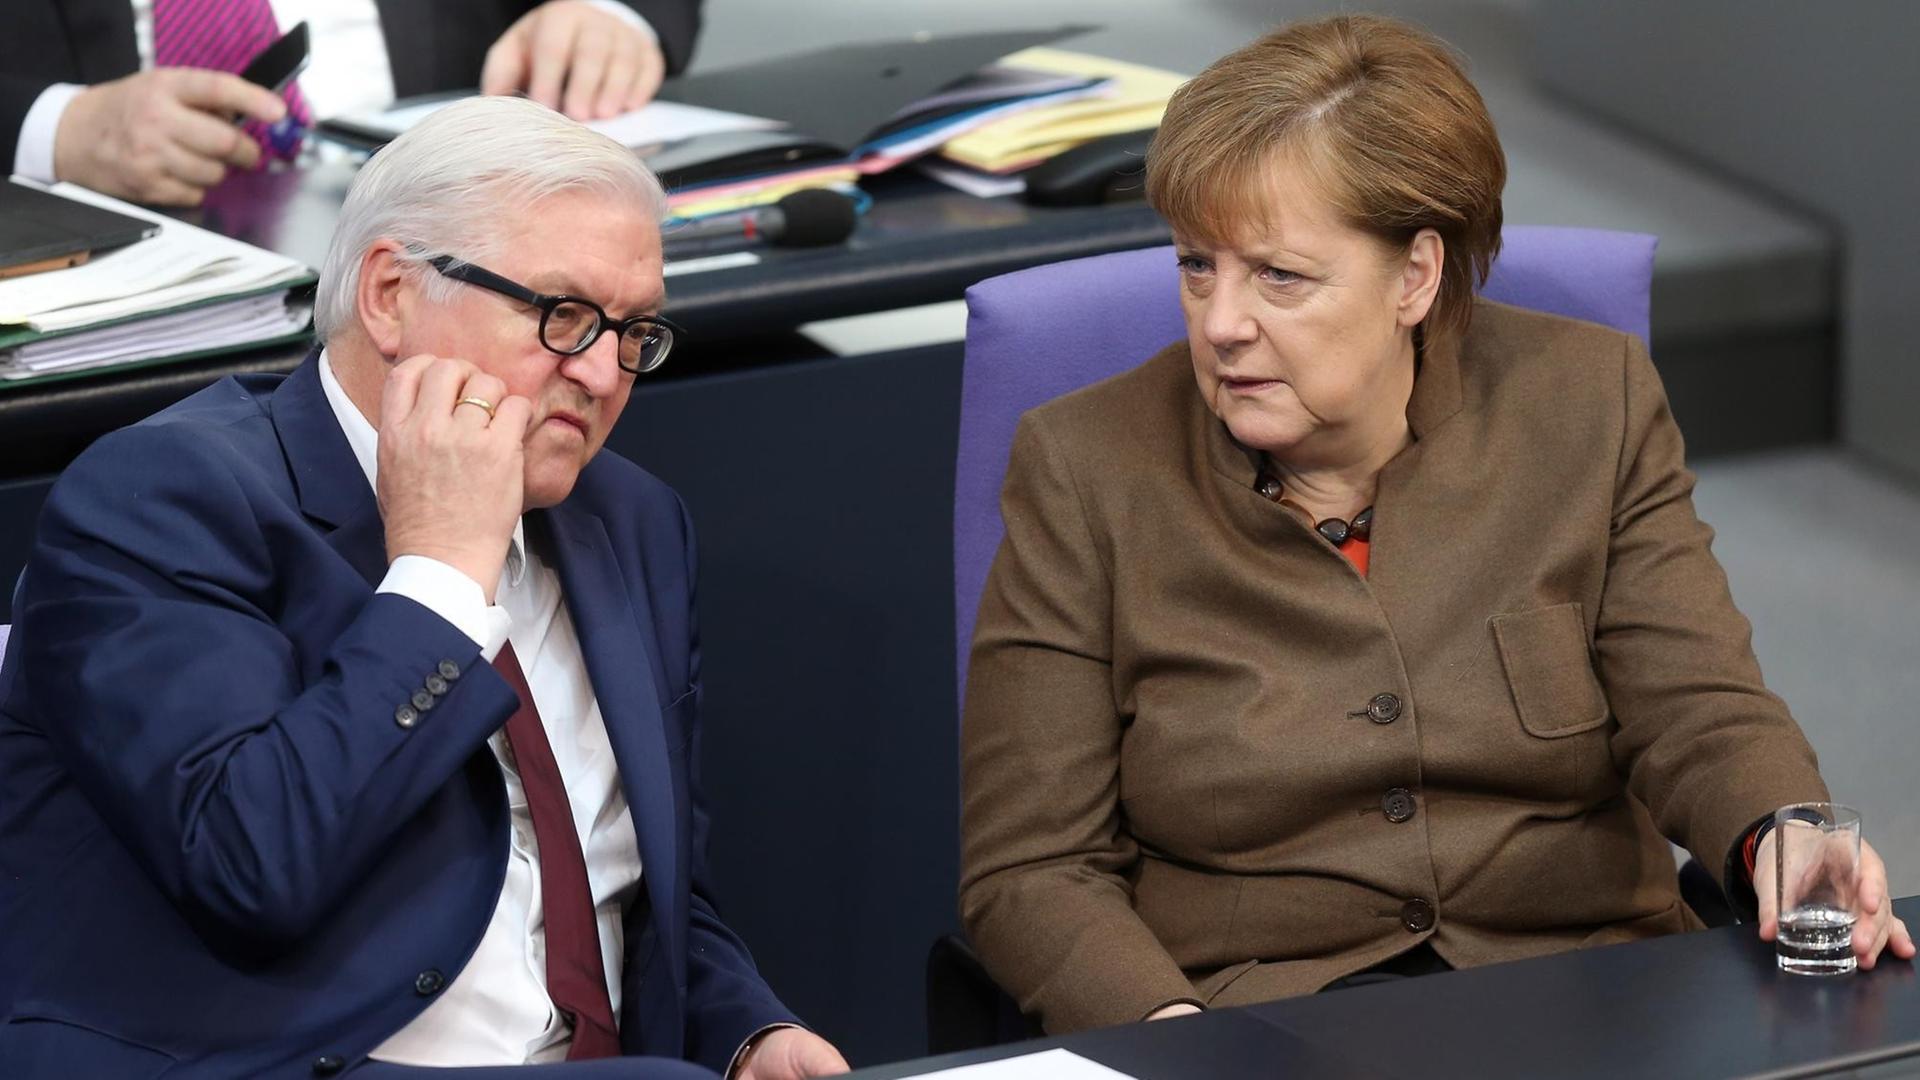 Bundeskanzlerin Angela Merkel (CDU) und Bundesaußenminister Frank-Walter Steinmeier (SPD) verfolgen am 25.02.2016 im Deutschen Bundestag in Berlin die Debatte um Einführung beschleunigter Asylverfahren.